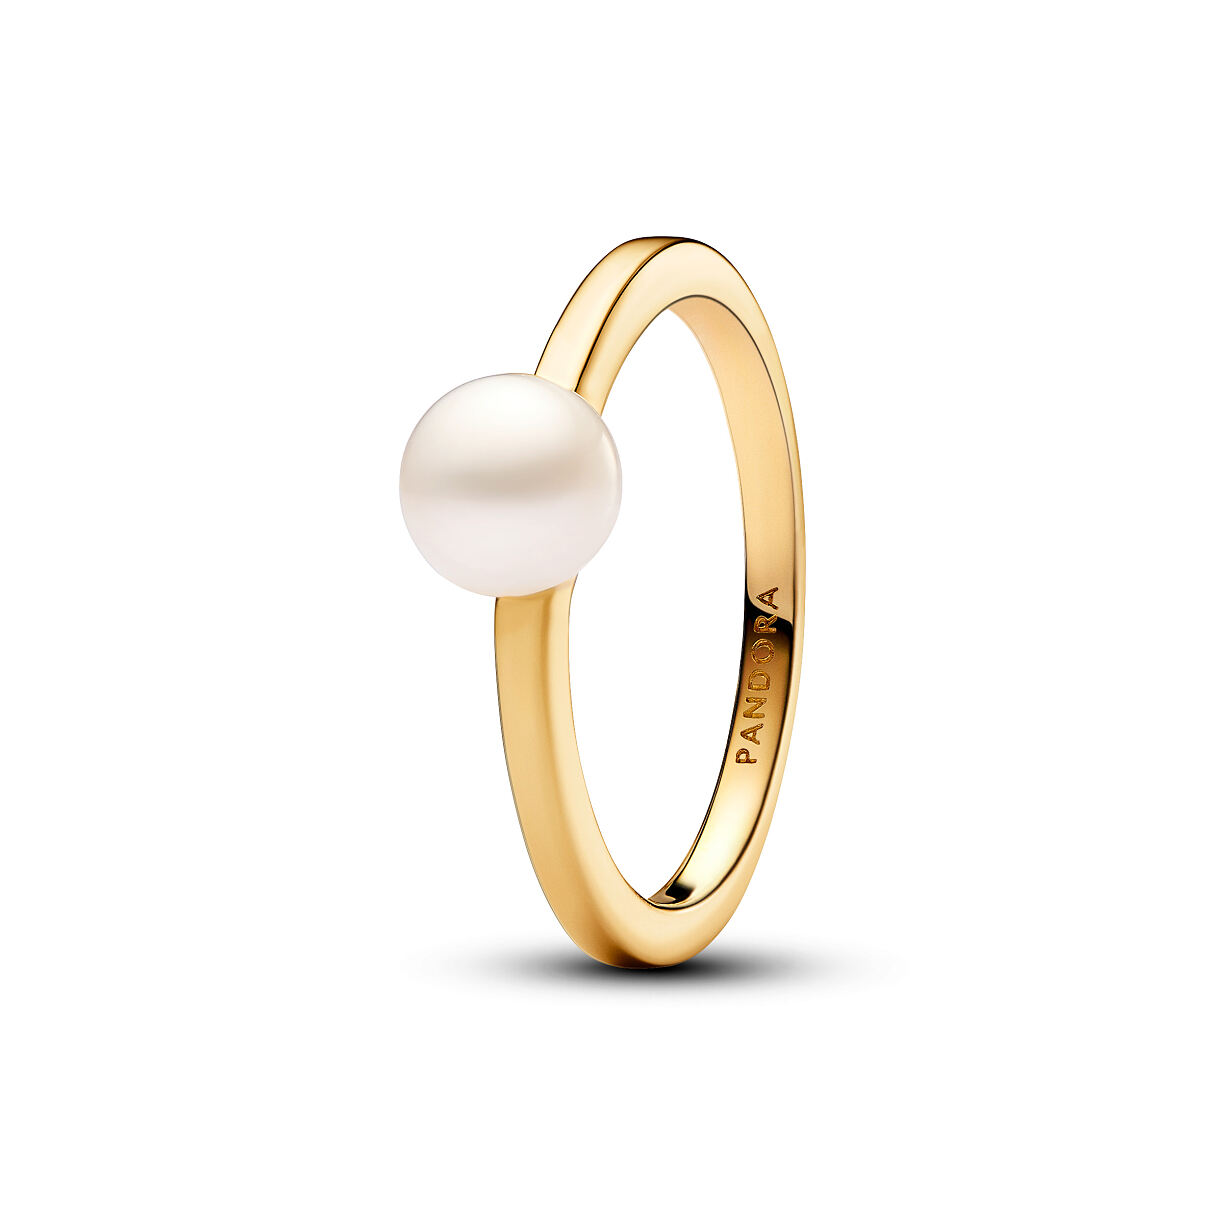 Pandora_Ring_14k Gold-plated_Freshwater Pearls_163157C01_99,00 Euro (2)